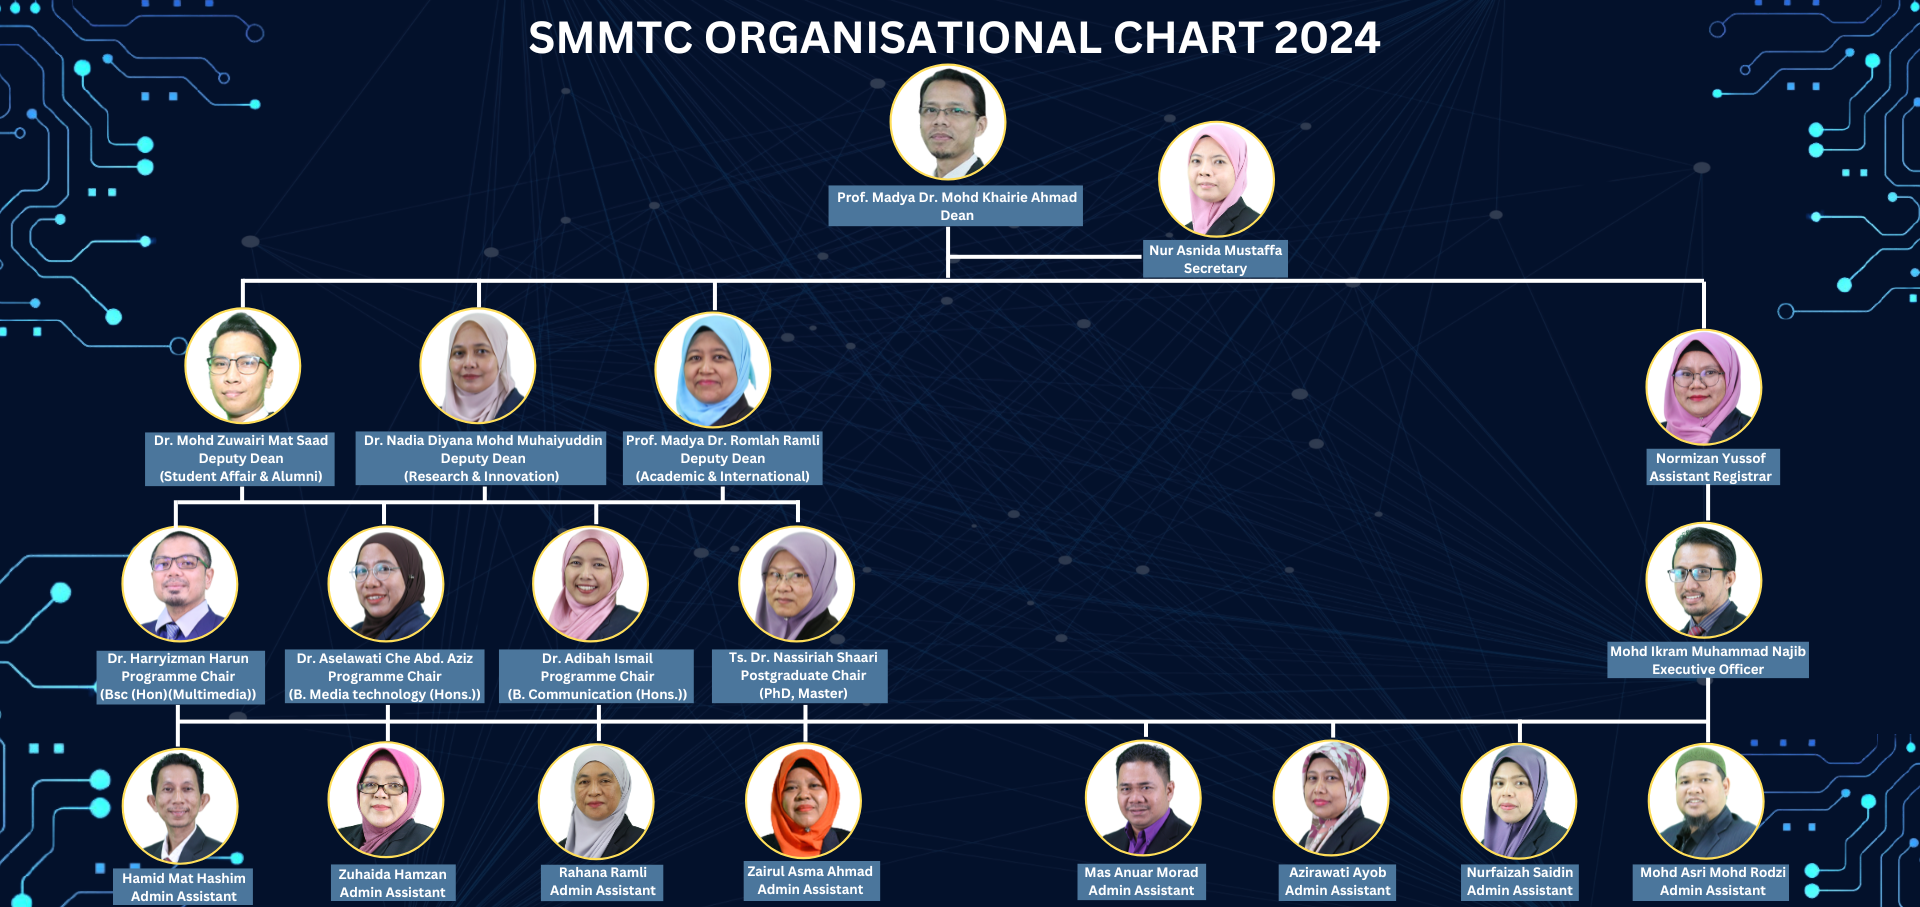 SMMTC Organizational Chart 2024